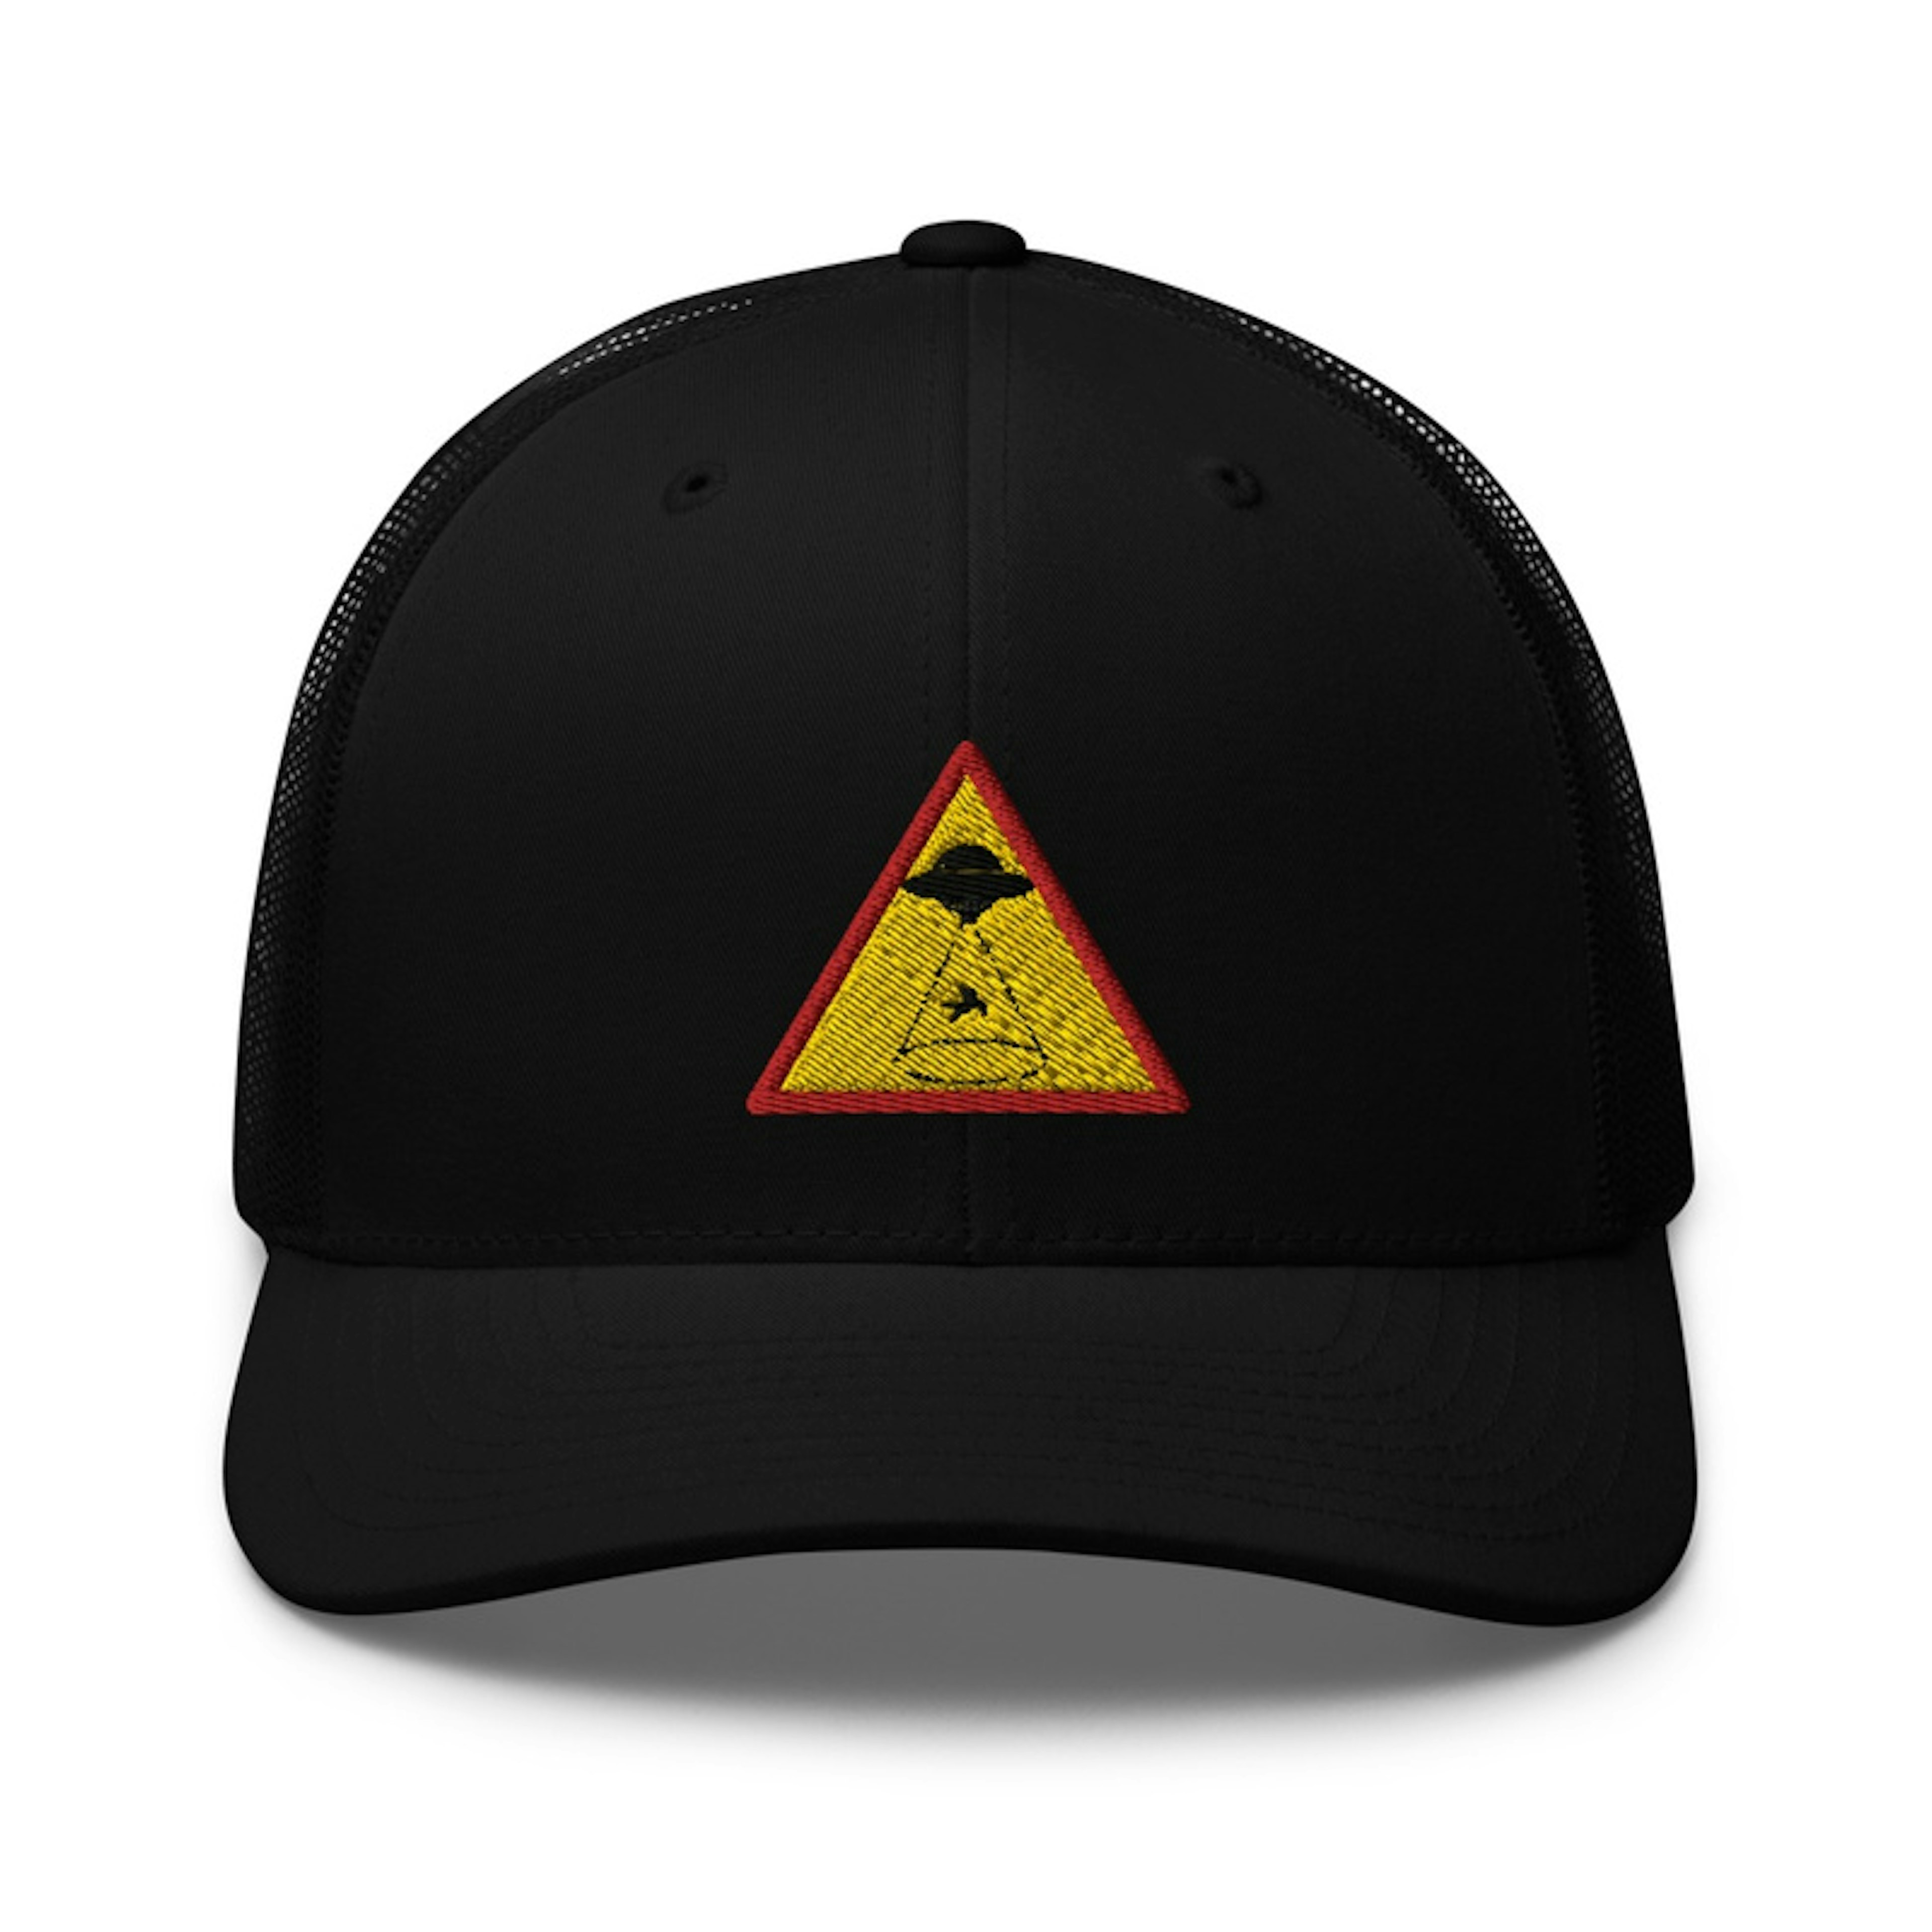 Abduction Zone Trucker Hat